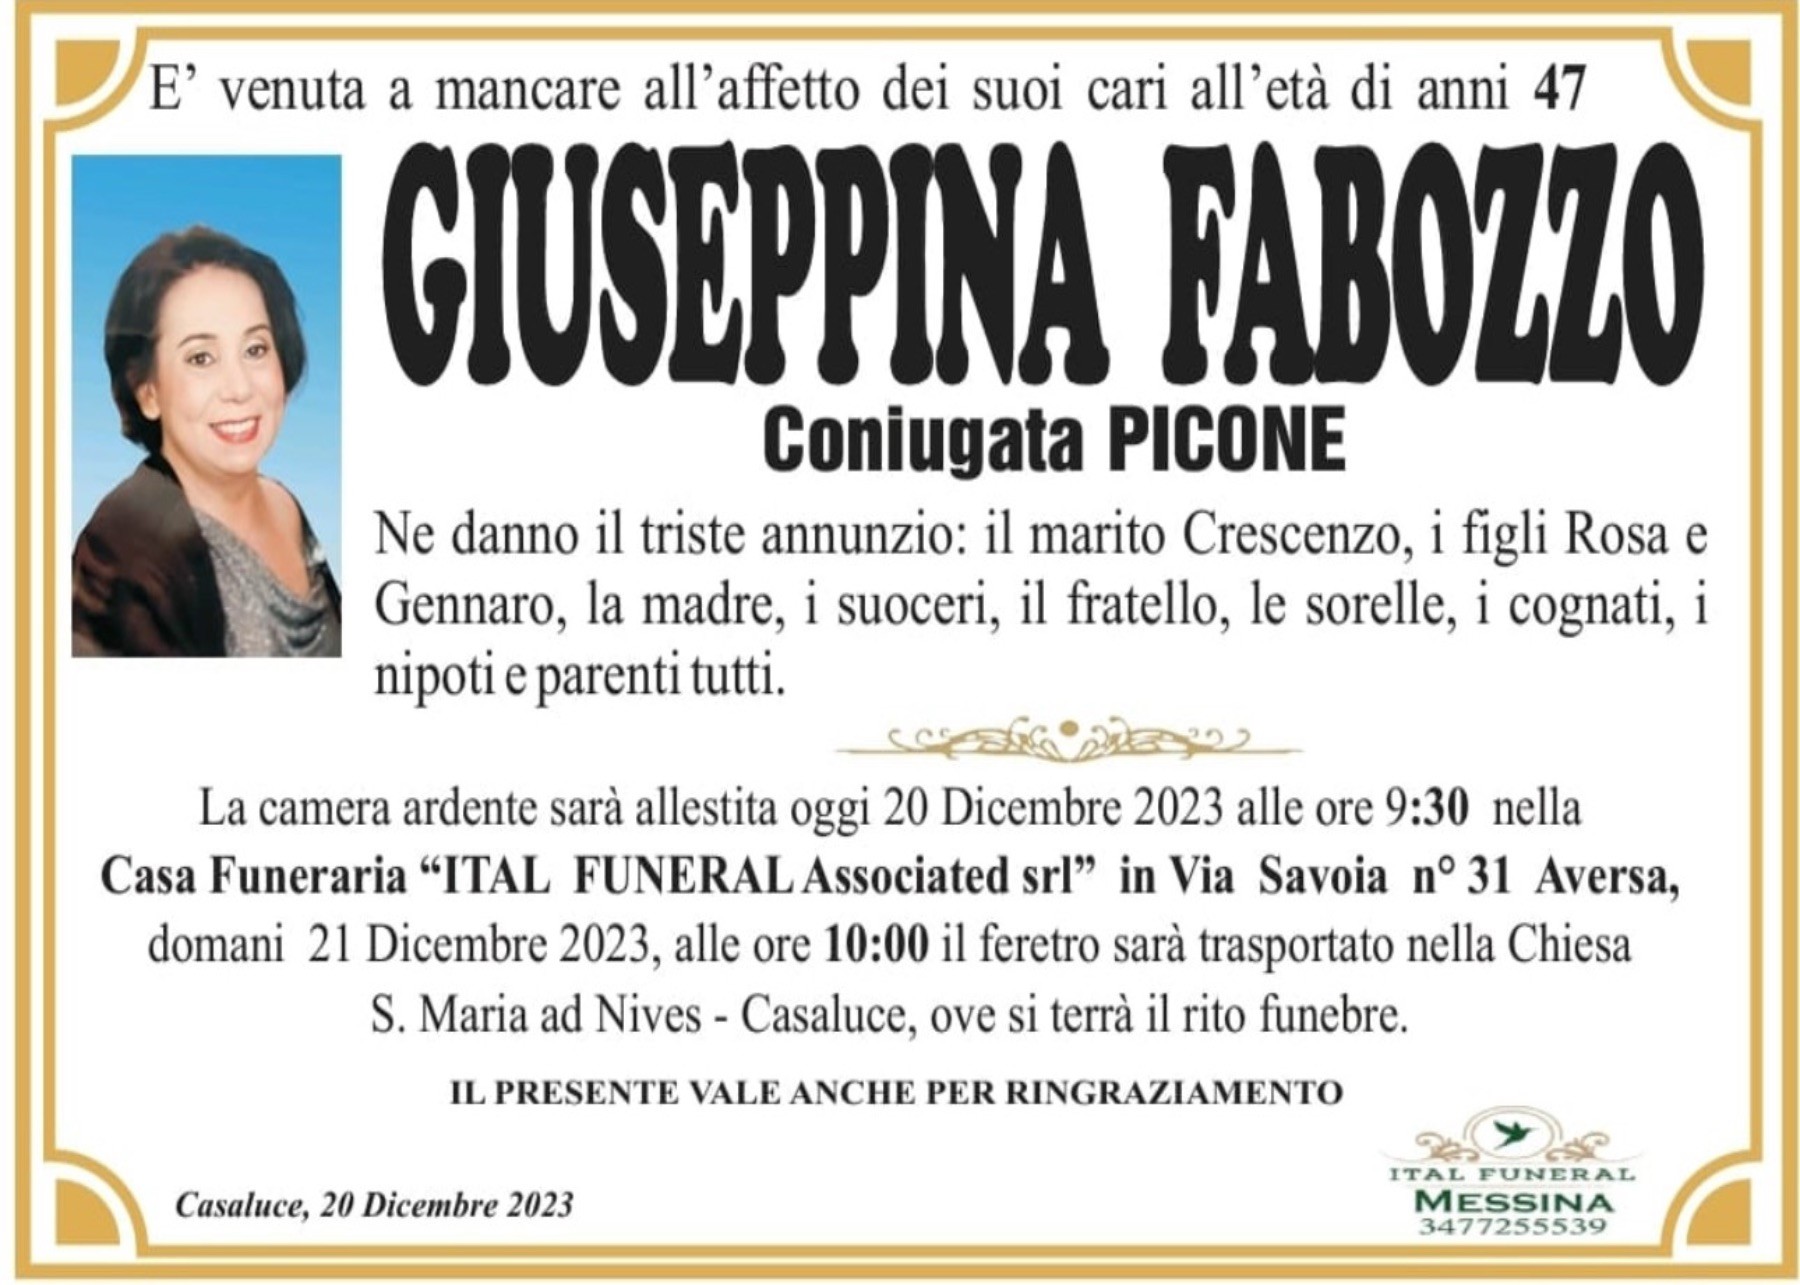 Giuseppina Fabozzo